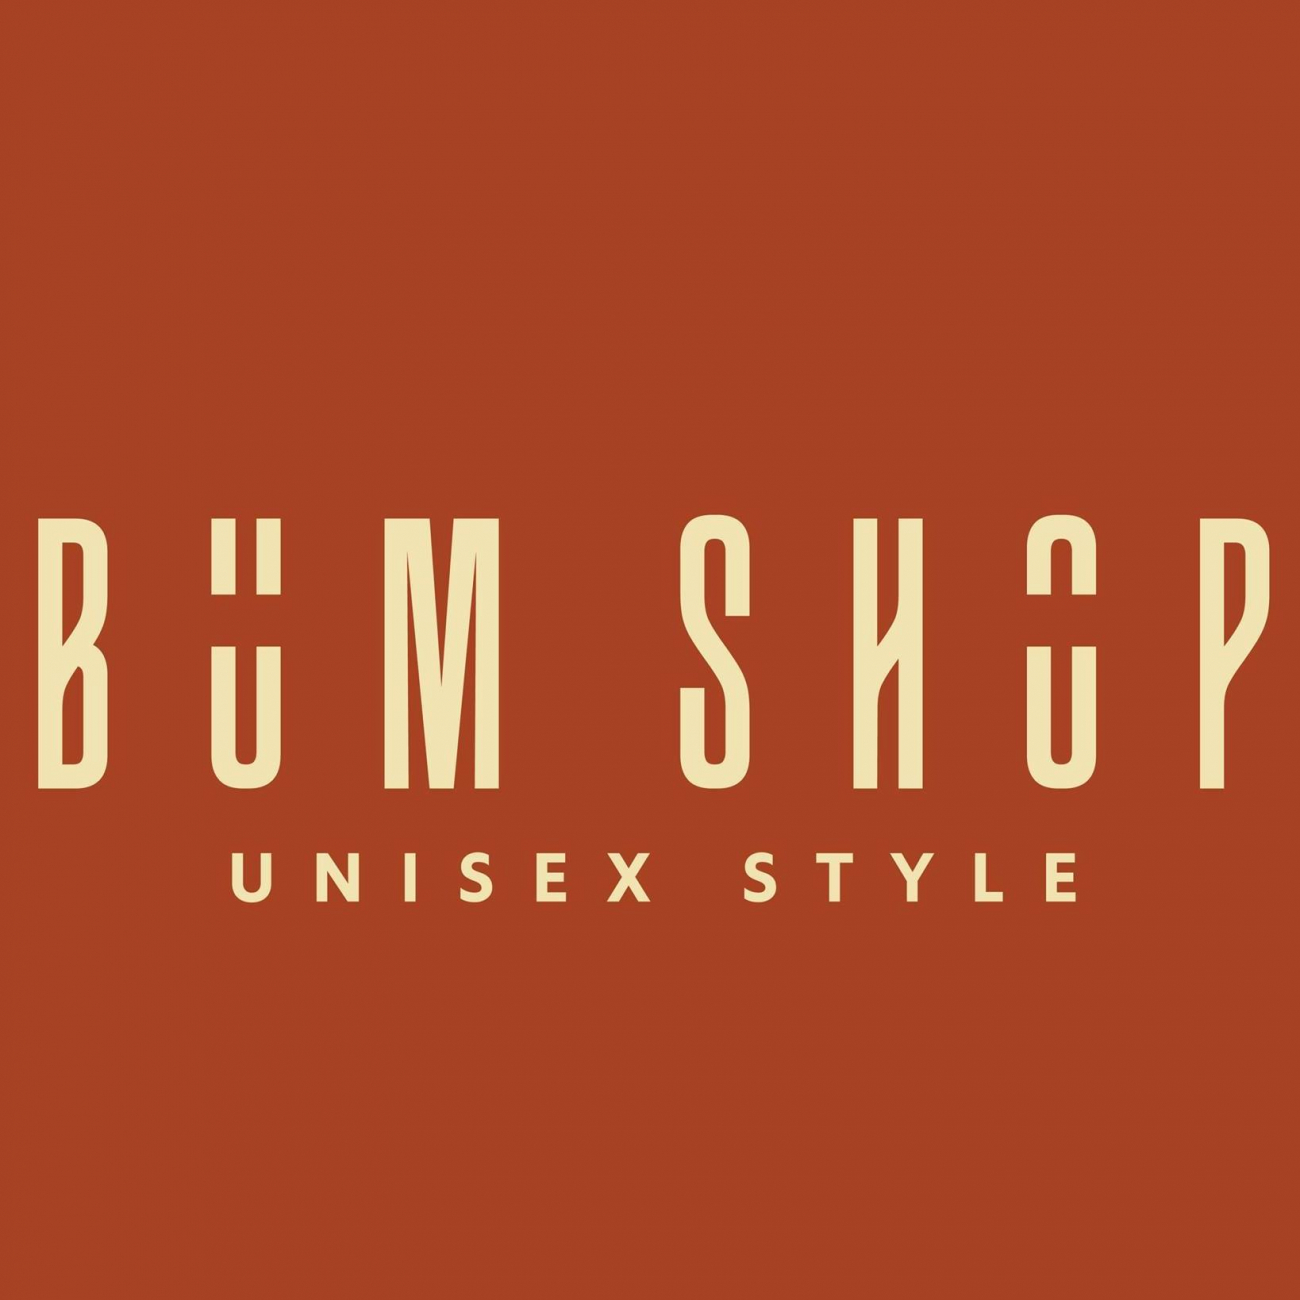 Xưởng sỉ quần áo nam nữ Bumshop